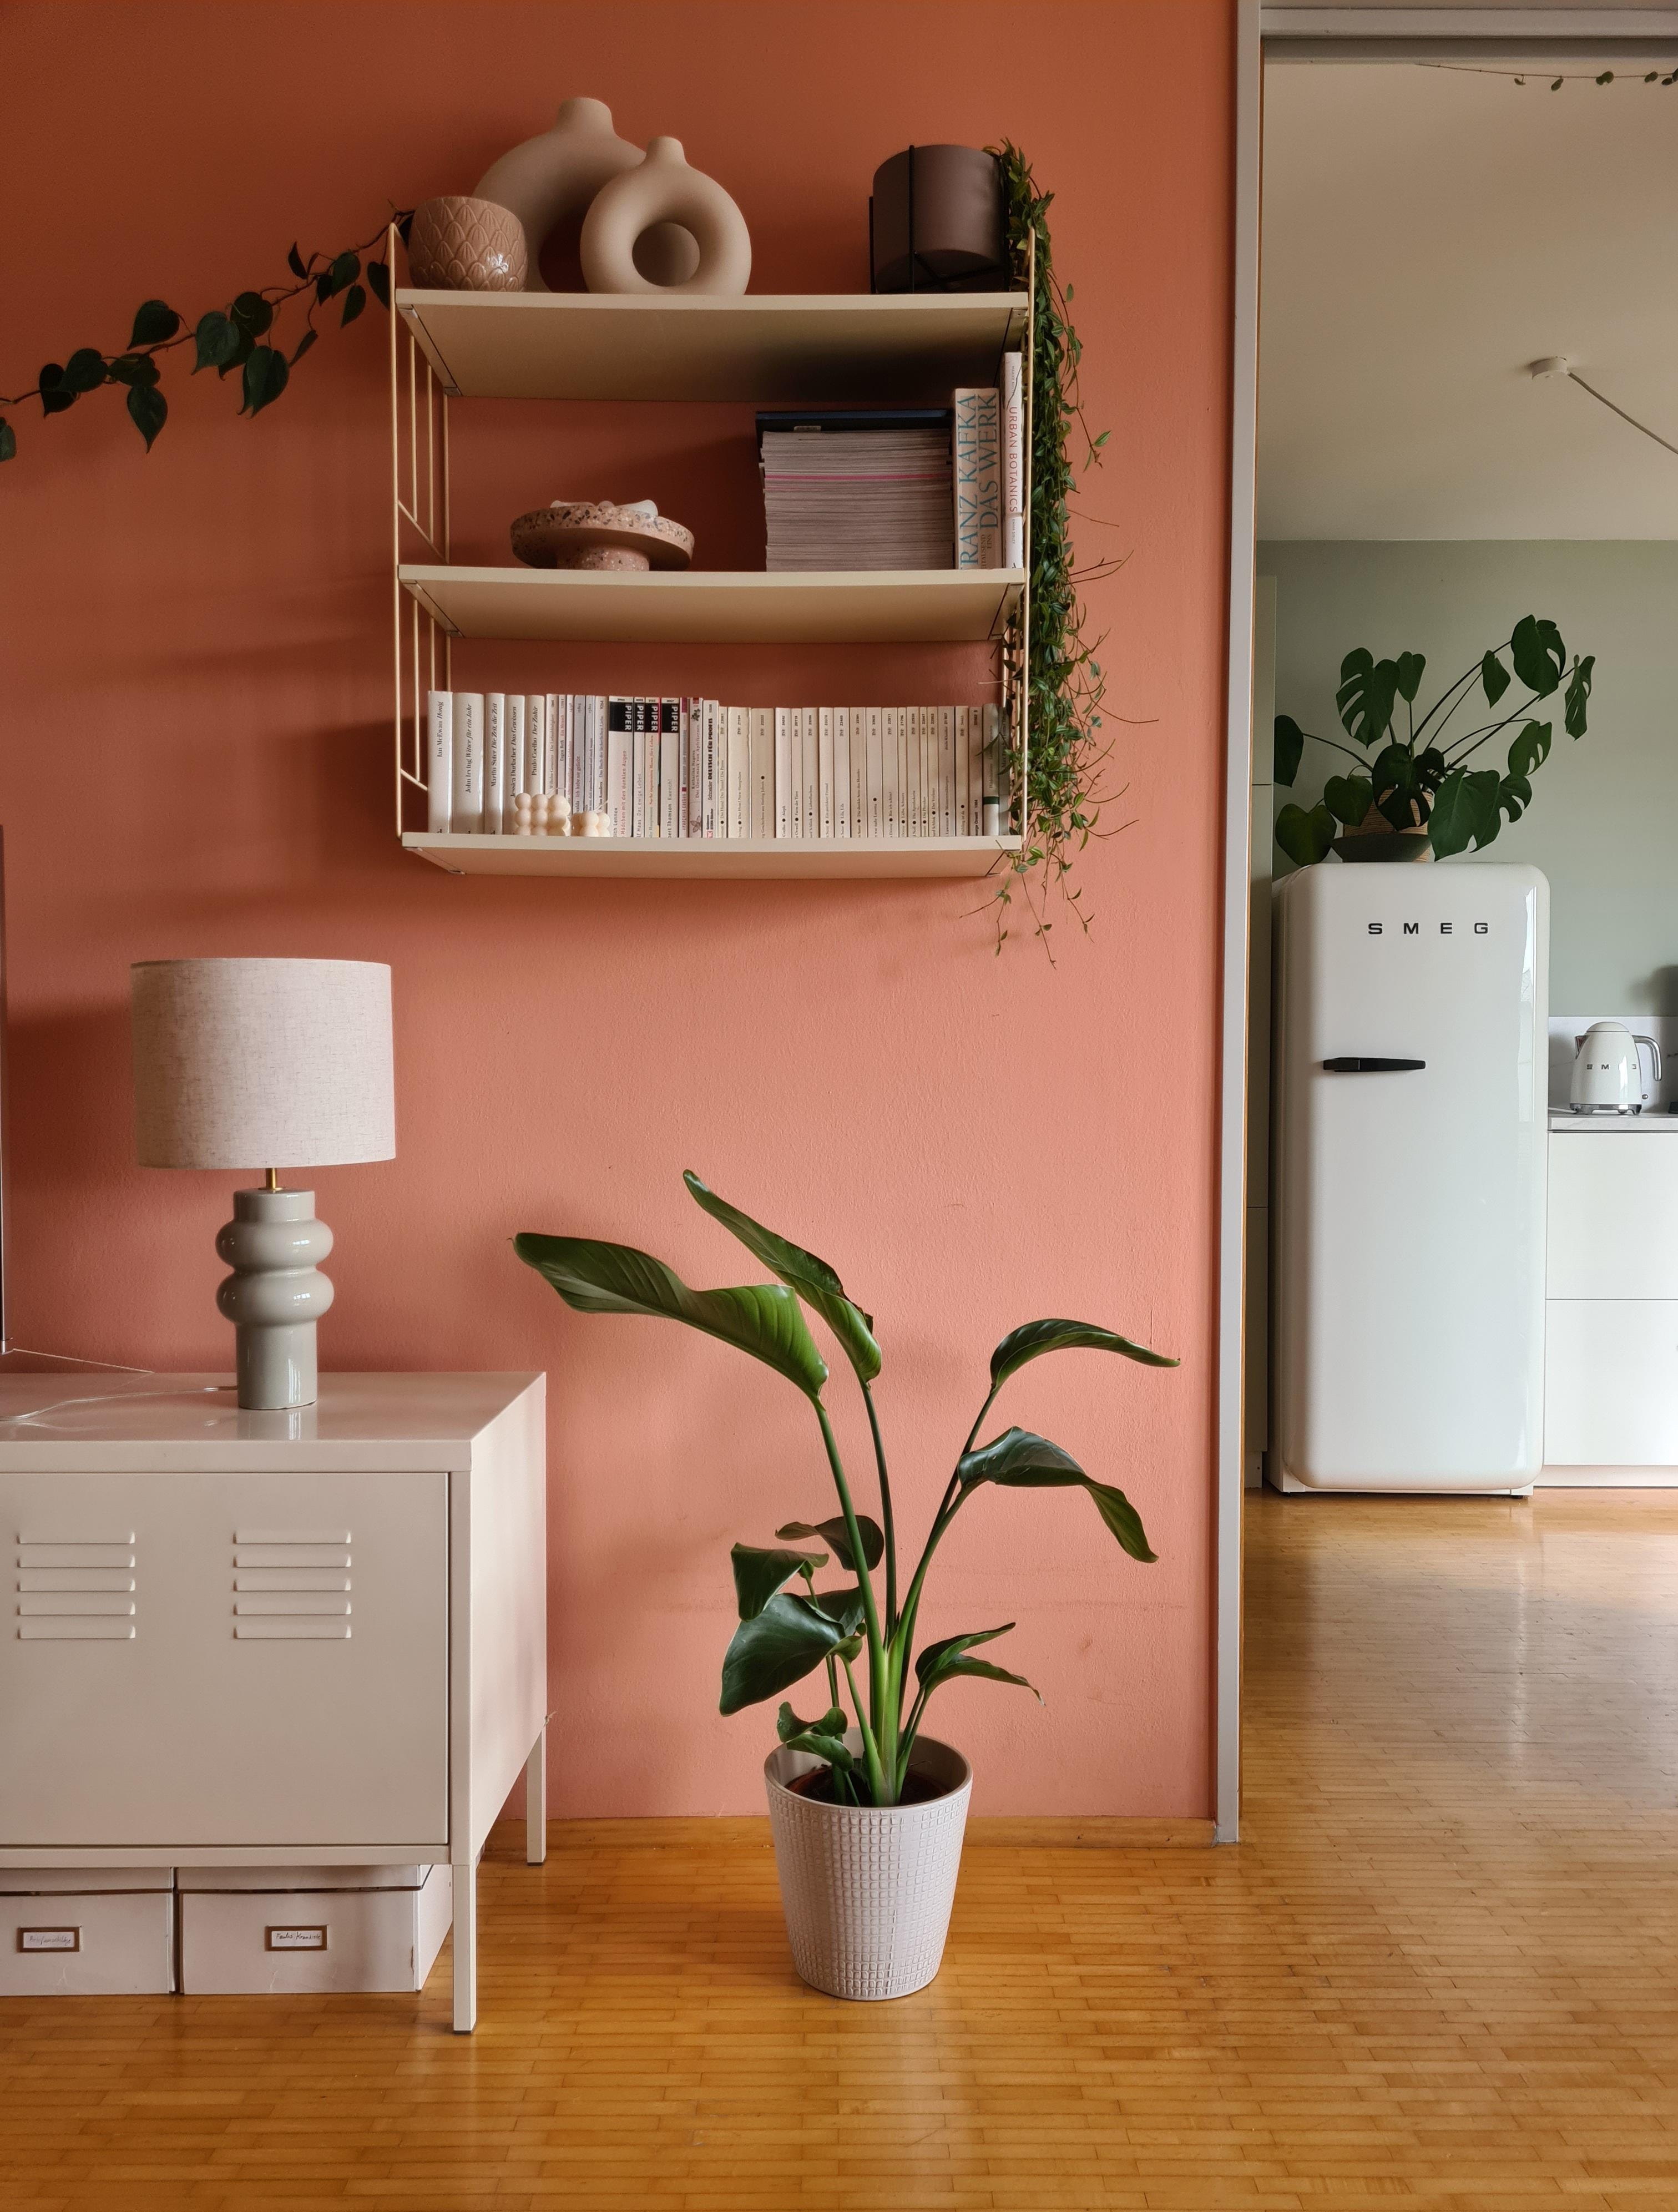 Mein liebster Blick: vom #wohnzimmer in die #küche | #wandfarbe #zimmerpflanze #kühlschrank #wandregal #lampe #smeg